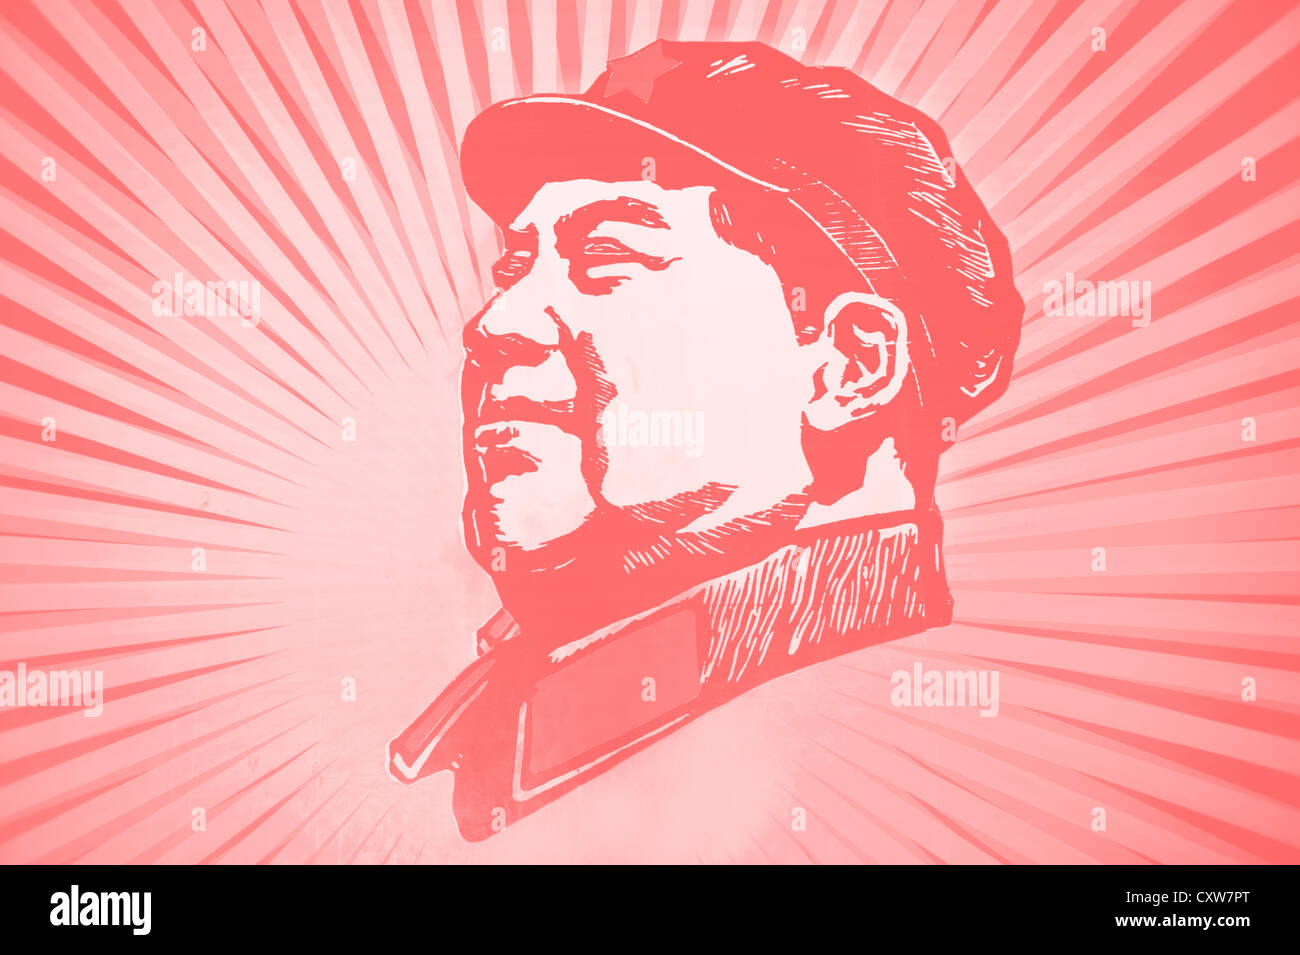 Le défunt chef MAO Zedong portrait Banque D'Images